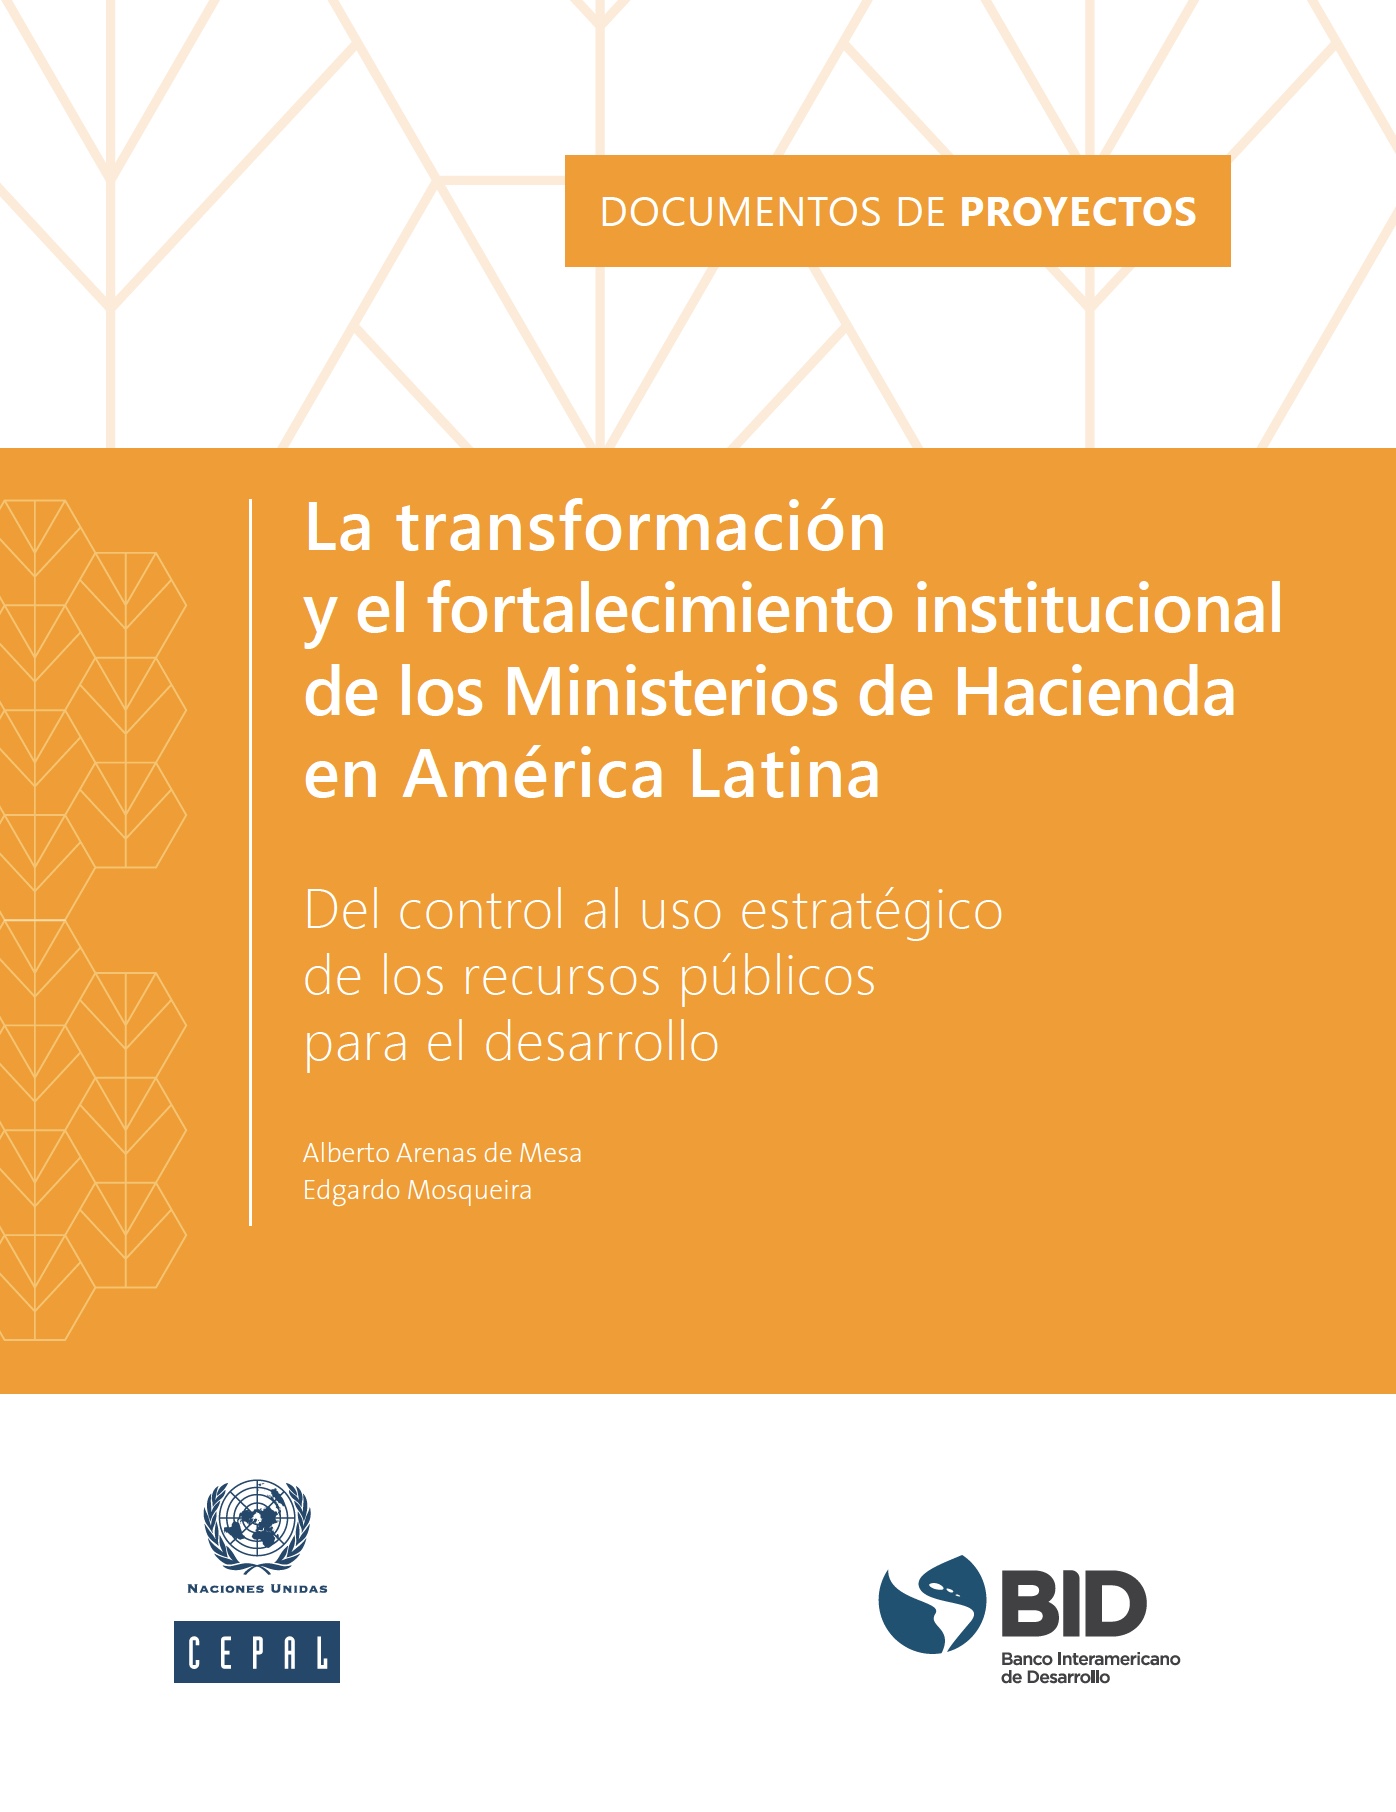 La transformación y el fortalecimiento institucional de los Ministerios de Hacienda en América Latina: del control al uso estratégico de los recursos públicos para el desarrollo